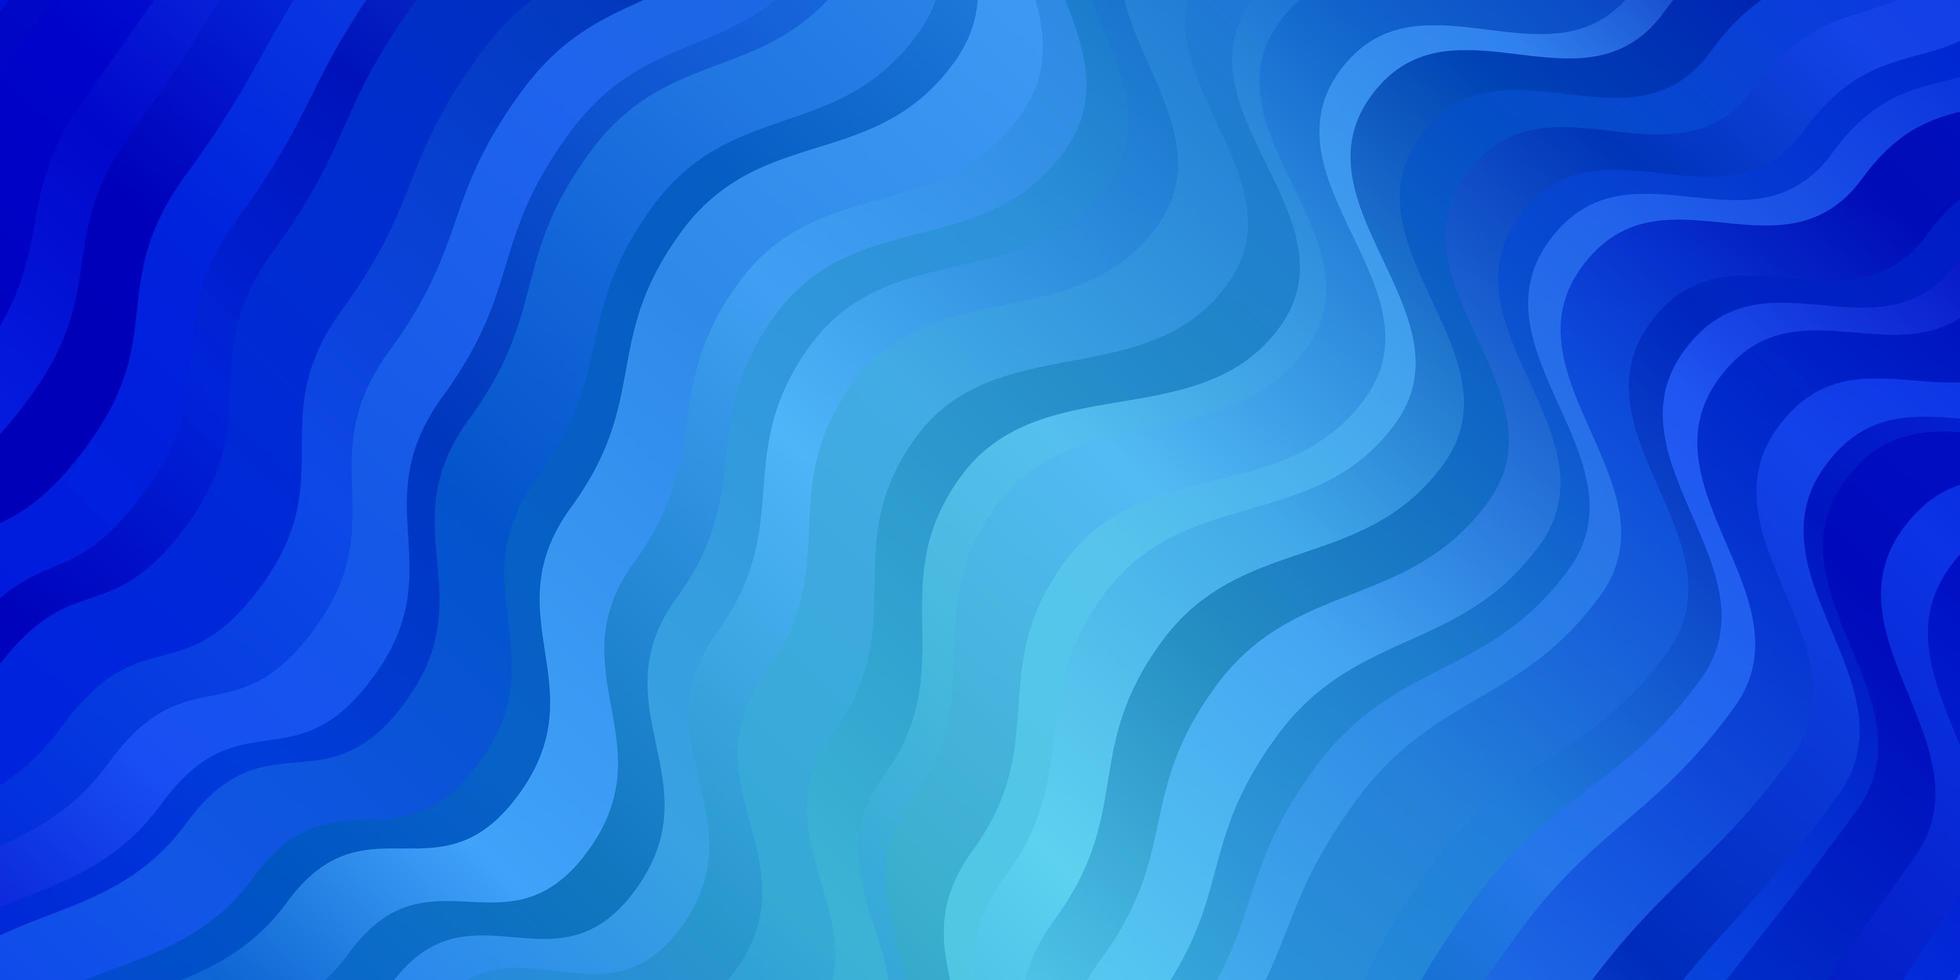 sfondo vettoriale azzurro con linee ironiche campione luminoso con linee piegate colorate forme design intelligente per le tue promozioni